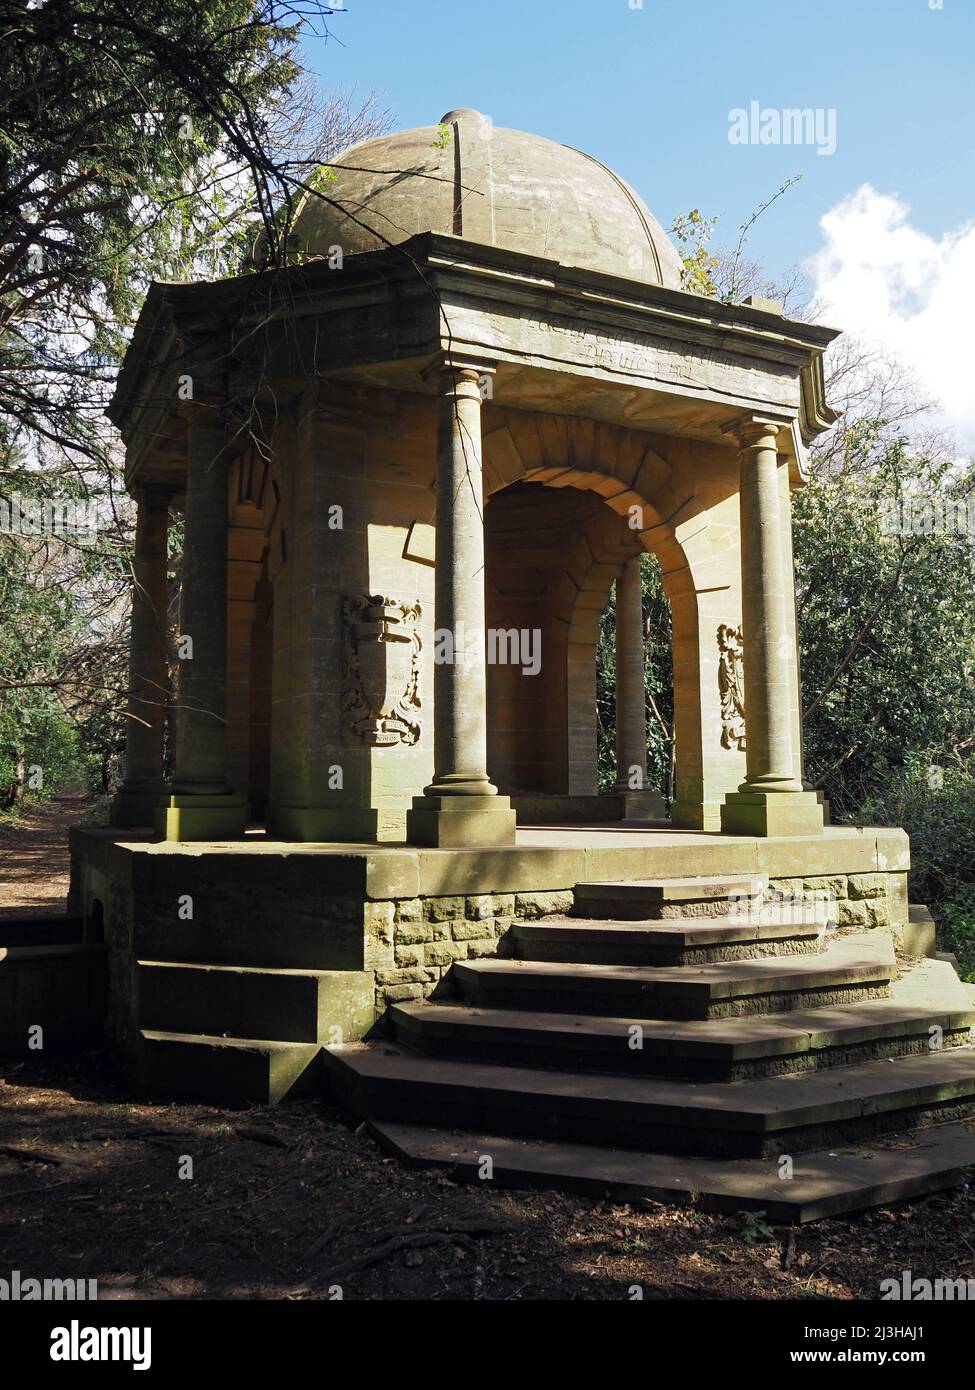 Sir Henry Samuelson Mausoleum 'Temple of Sleep' Wisley und Ockham Common, Chatley Heath, Surrey, Großbritannien. Stockfoto